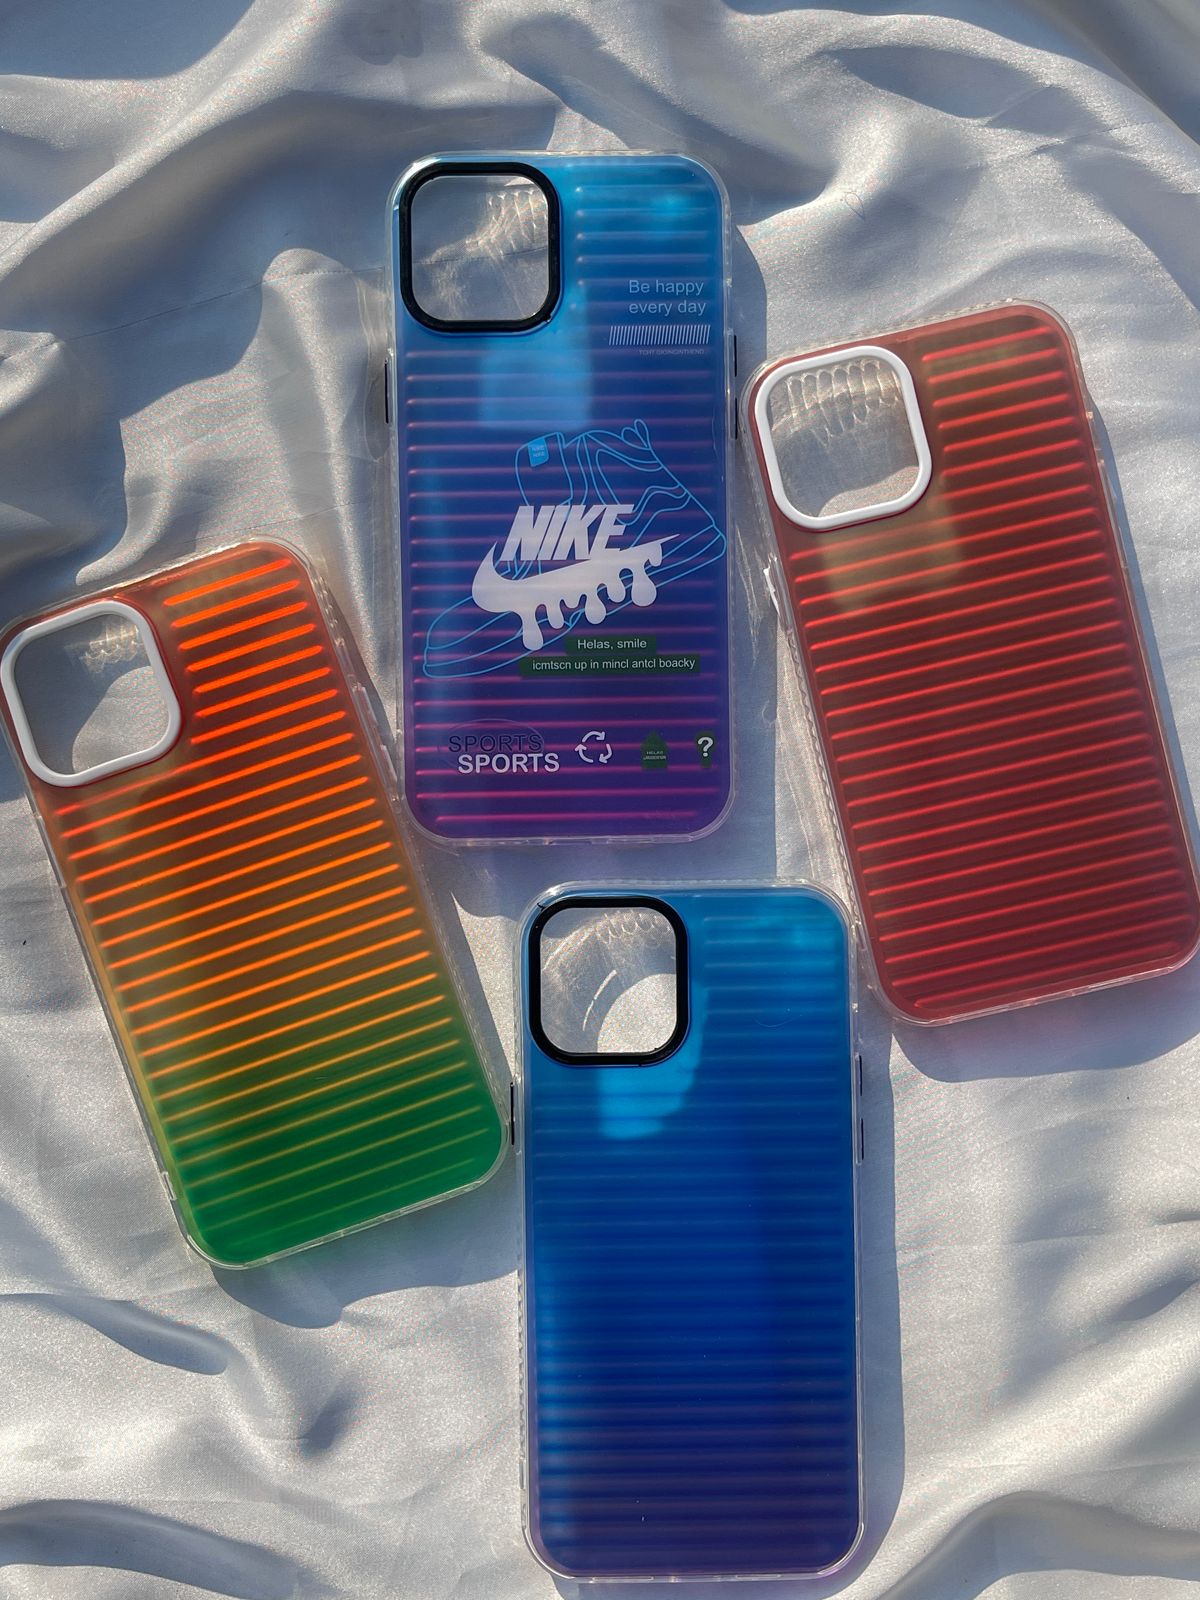 iPhone "12 Pro Max" Rainbow Translucent Case